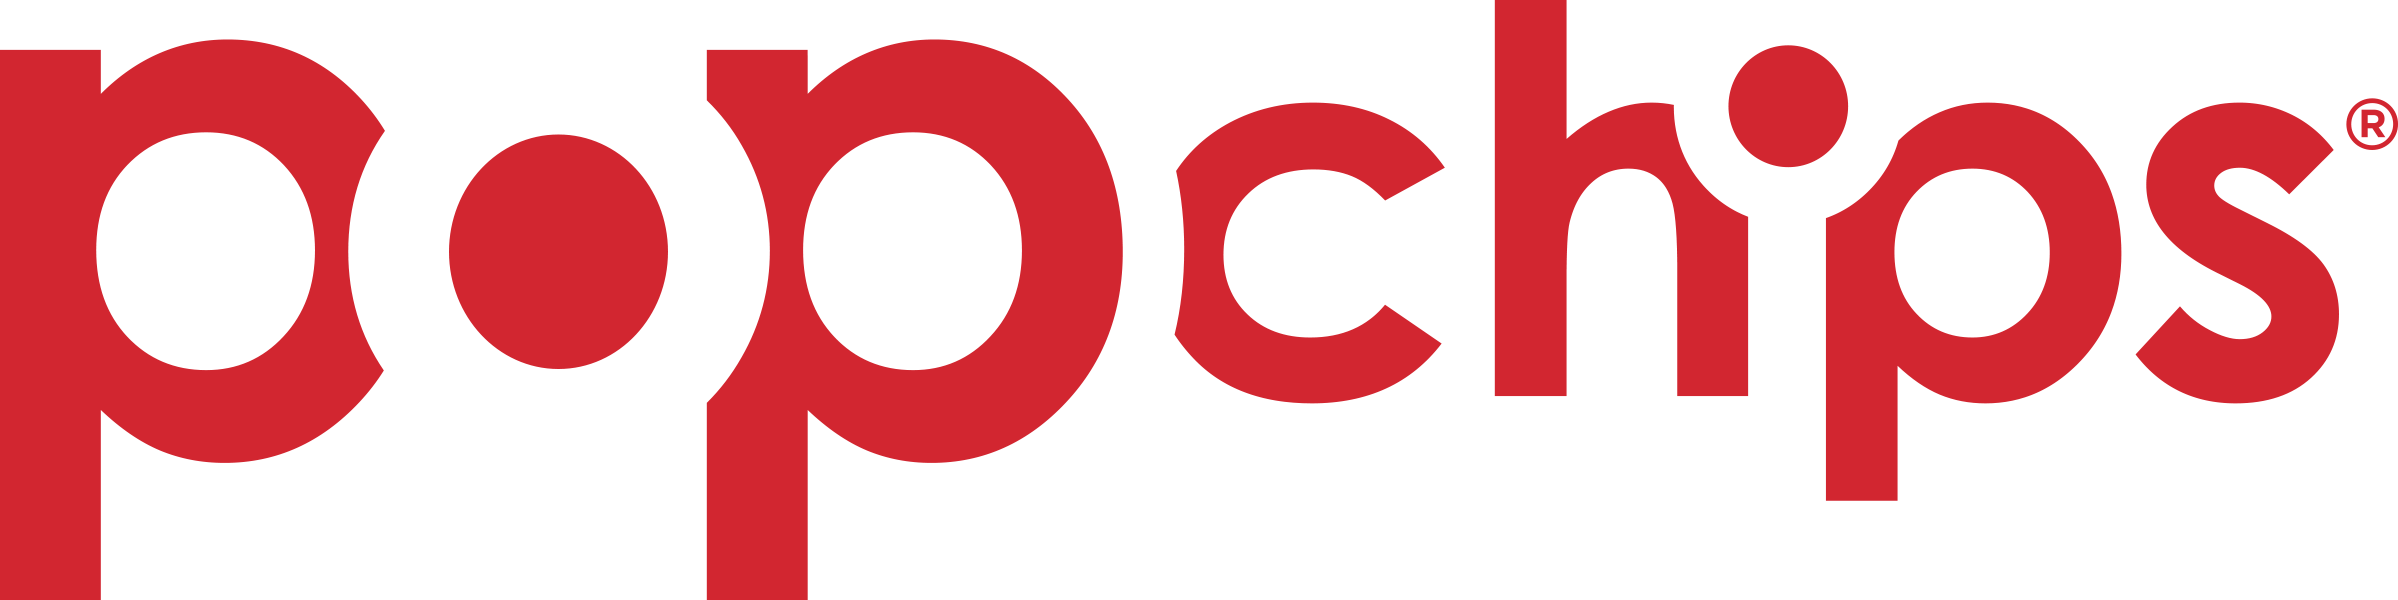 Popchips Logo Red